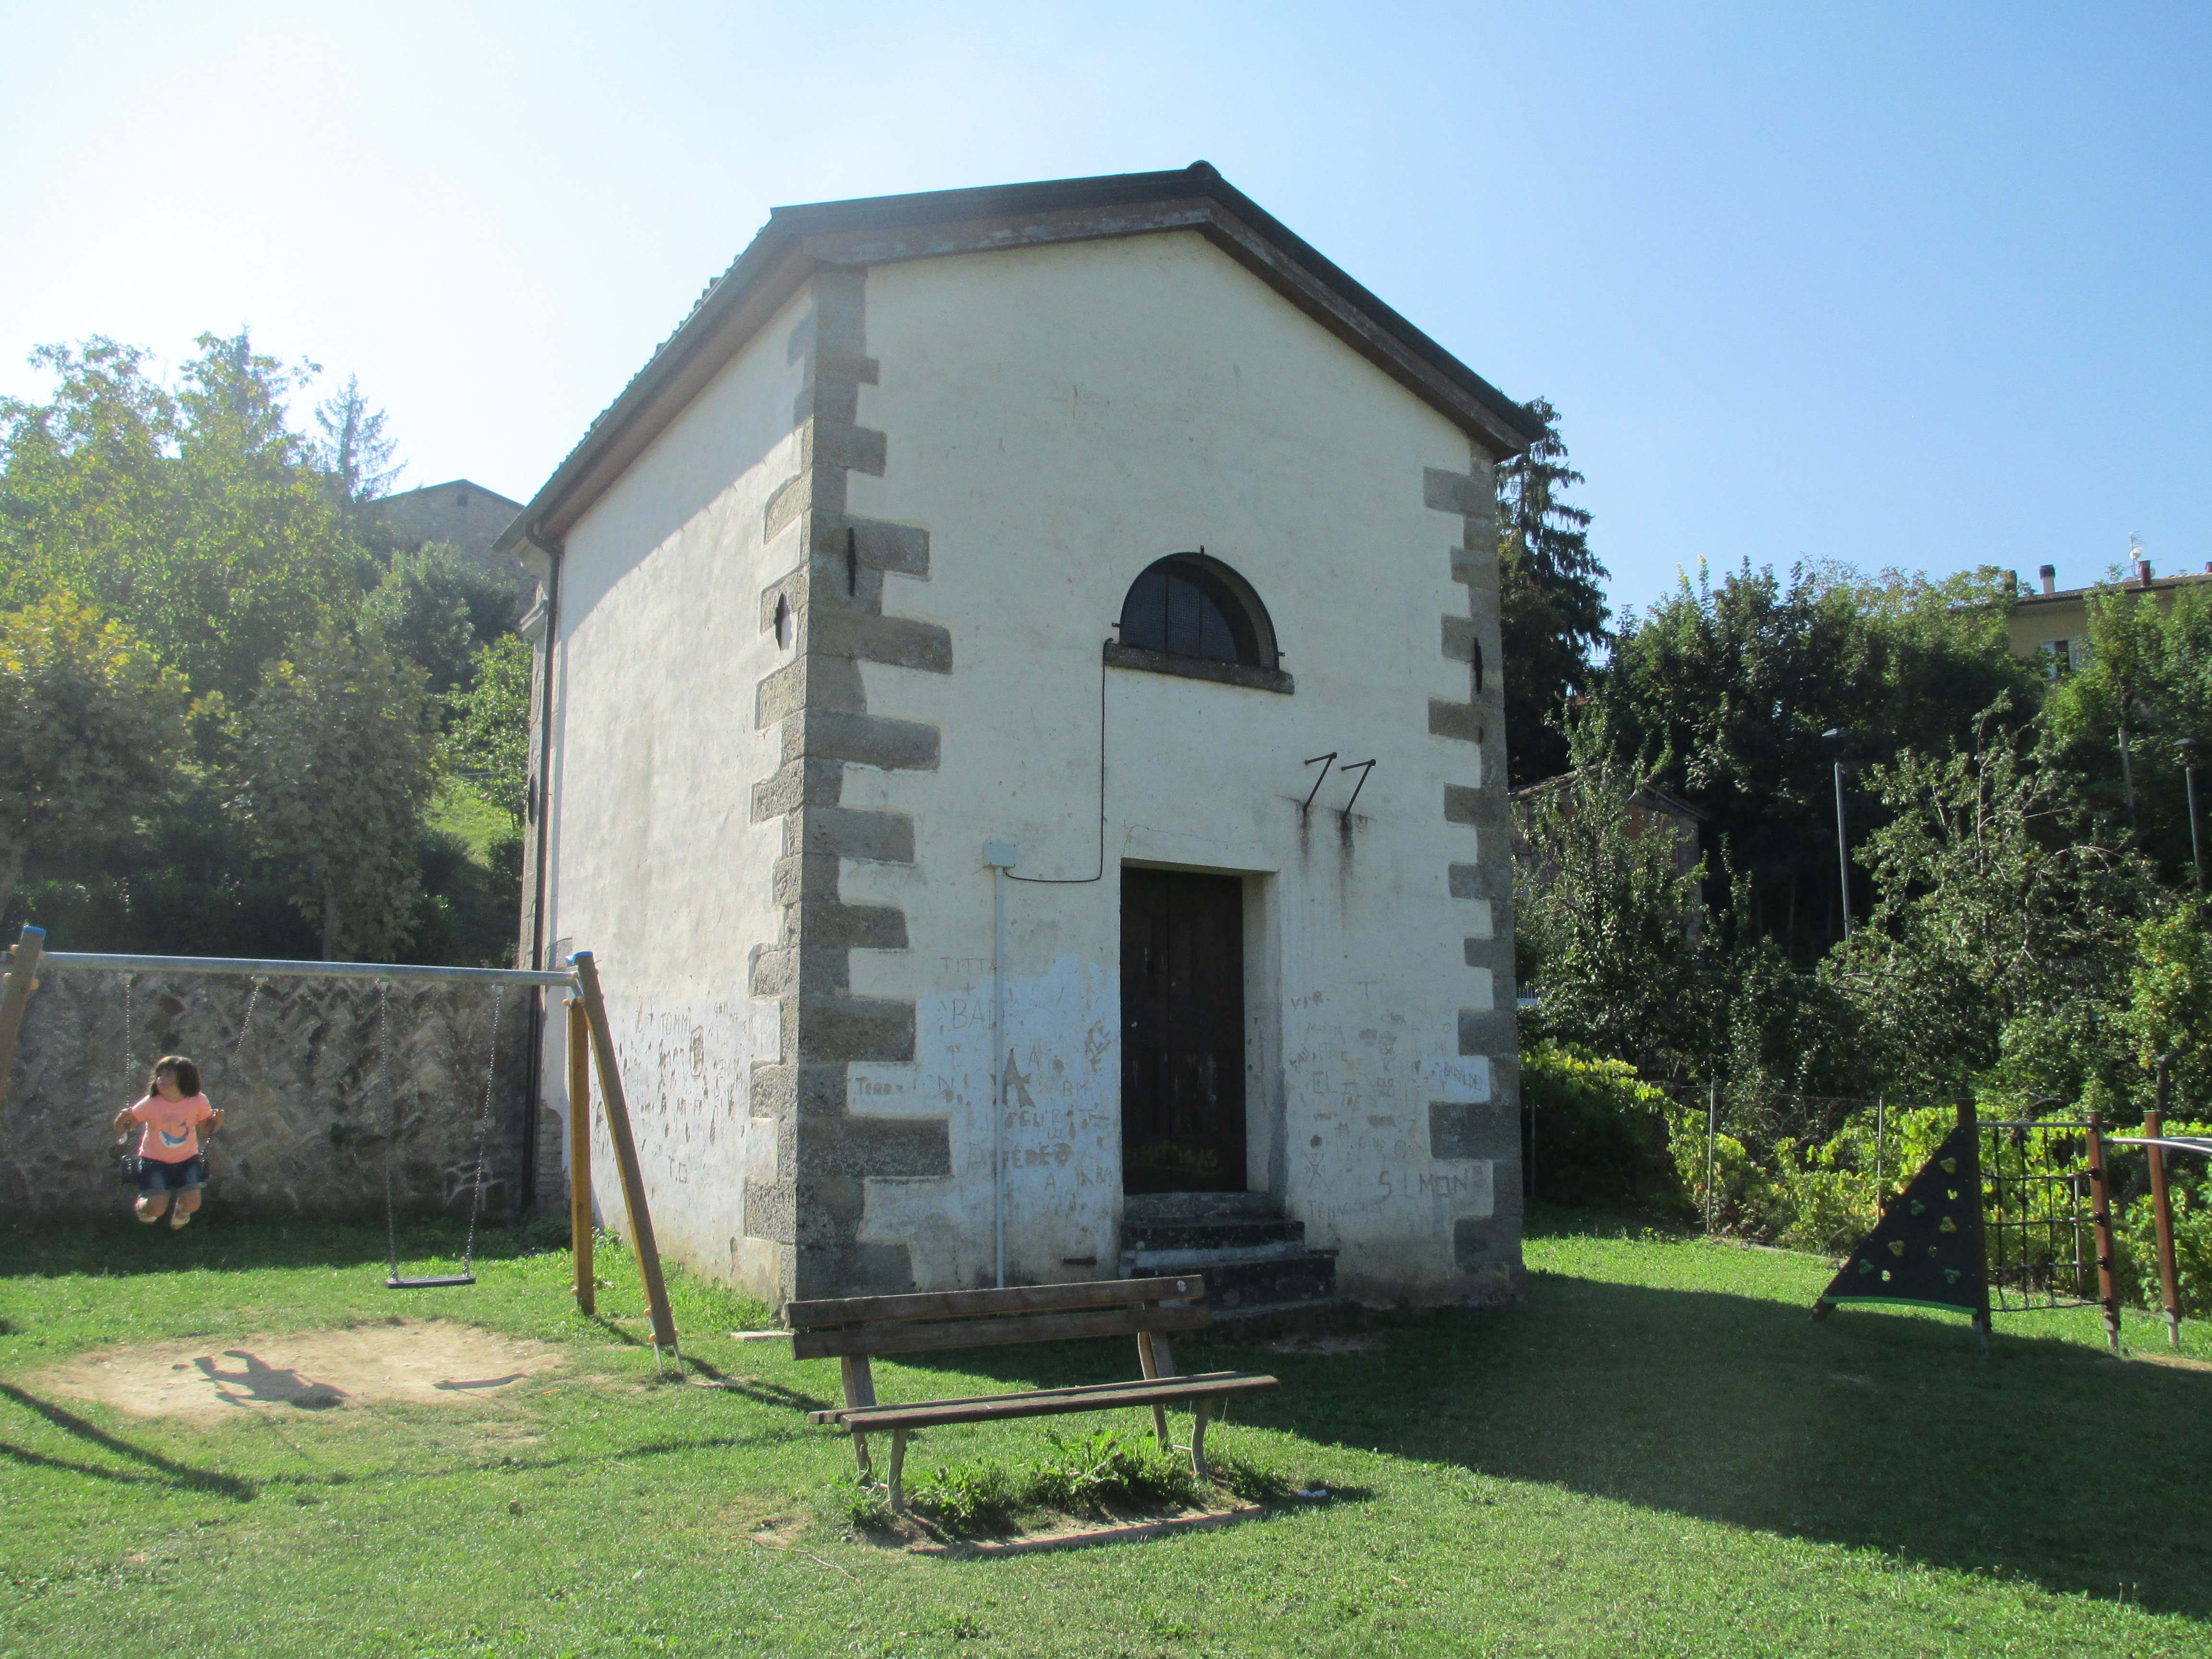 Cappella in area cimiteriale (cappella, cimiteriale) - San Benedetto Val di Sambro (BO) 